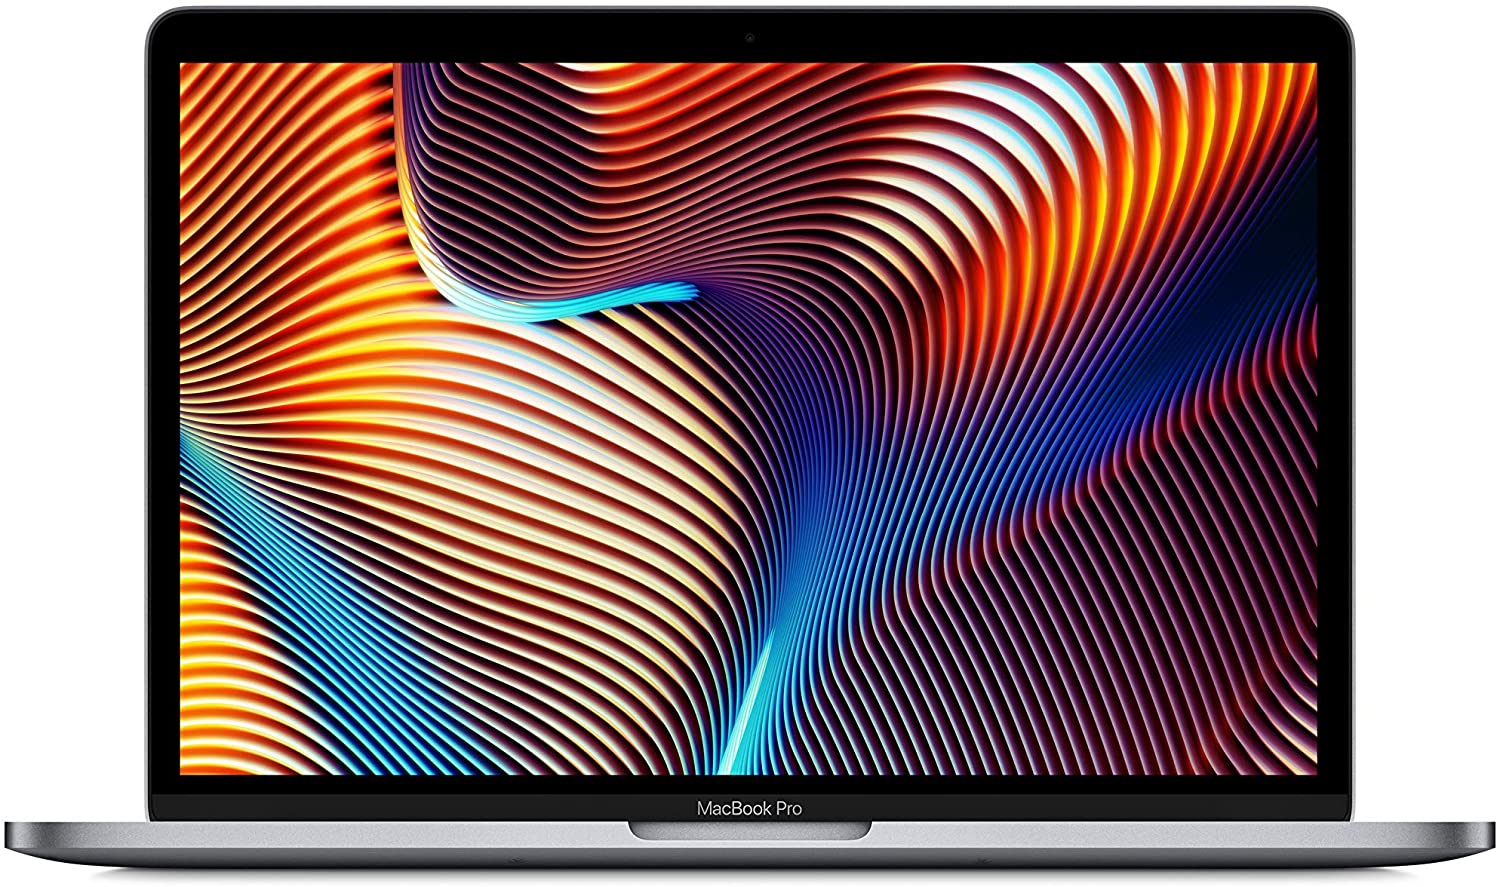 【終了】MacBook Pro 13インチ (Mid 2019)がタイムセール特価で販売中